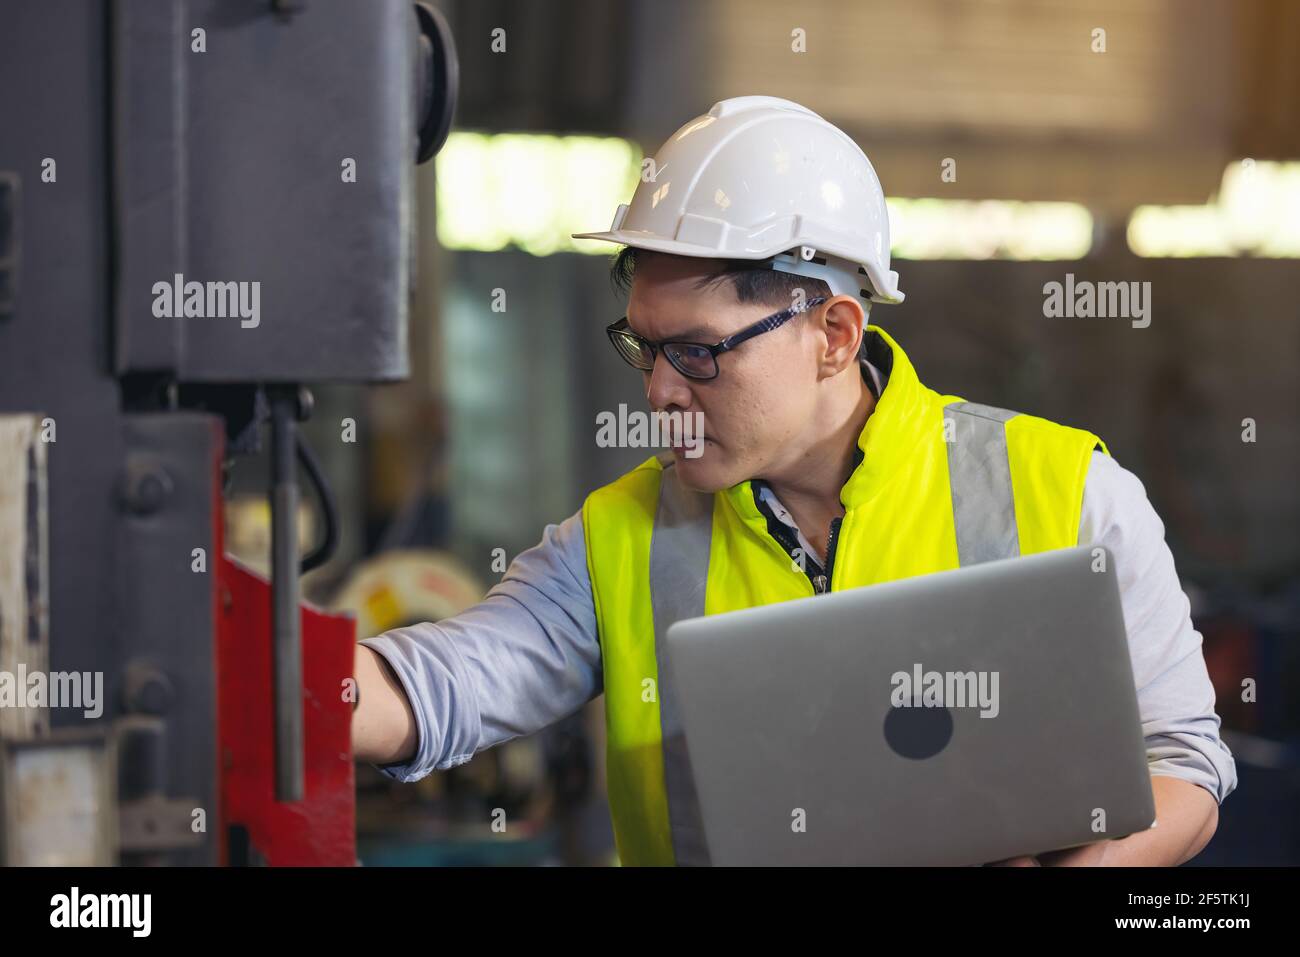 Techniker oder Techniker, die eine OP-Maske tragen und Computer-Notebook zur Überprüfung verwenden Stockfoto